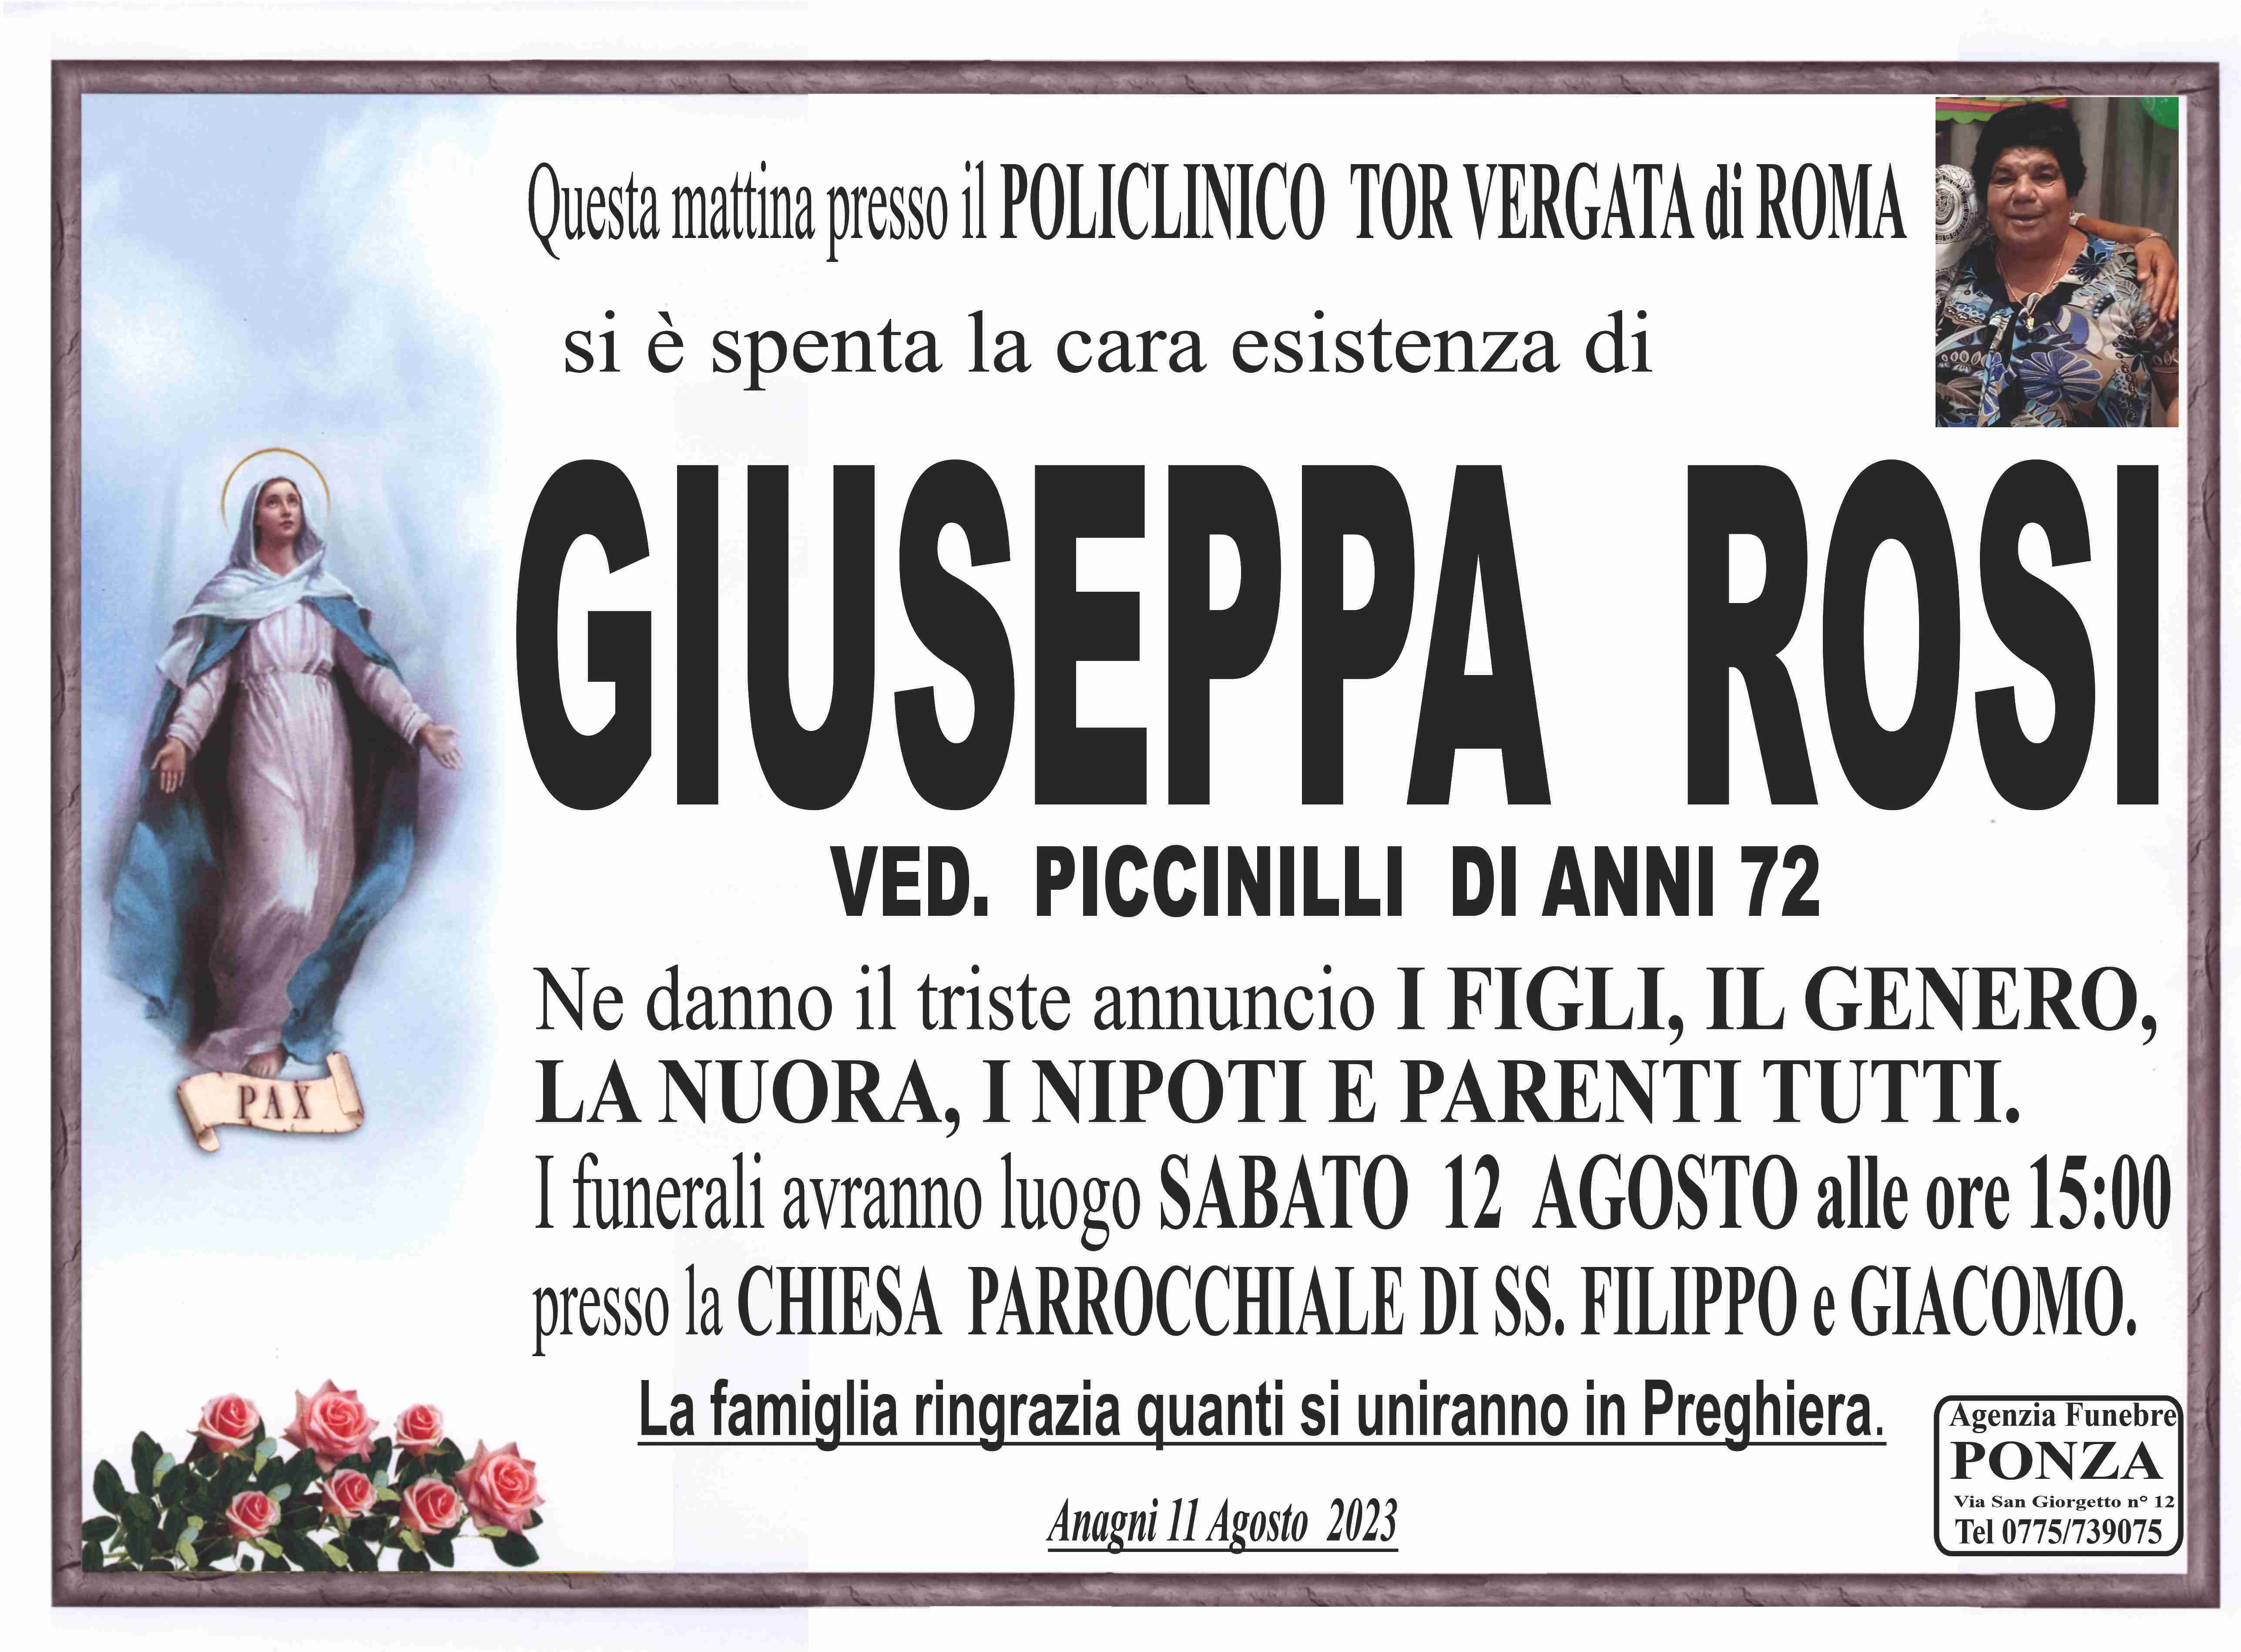 Giuseppa Rosi